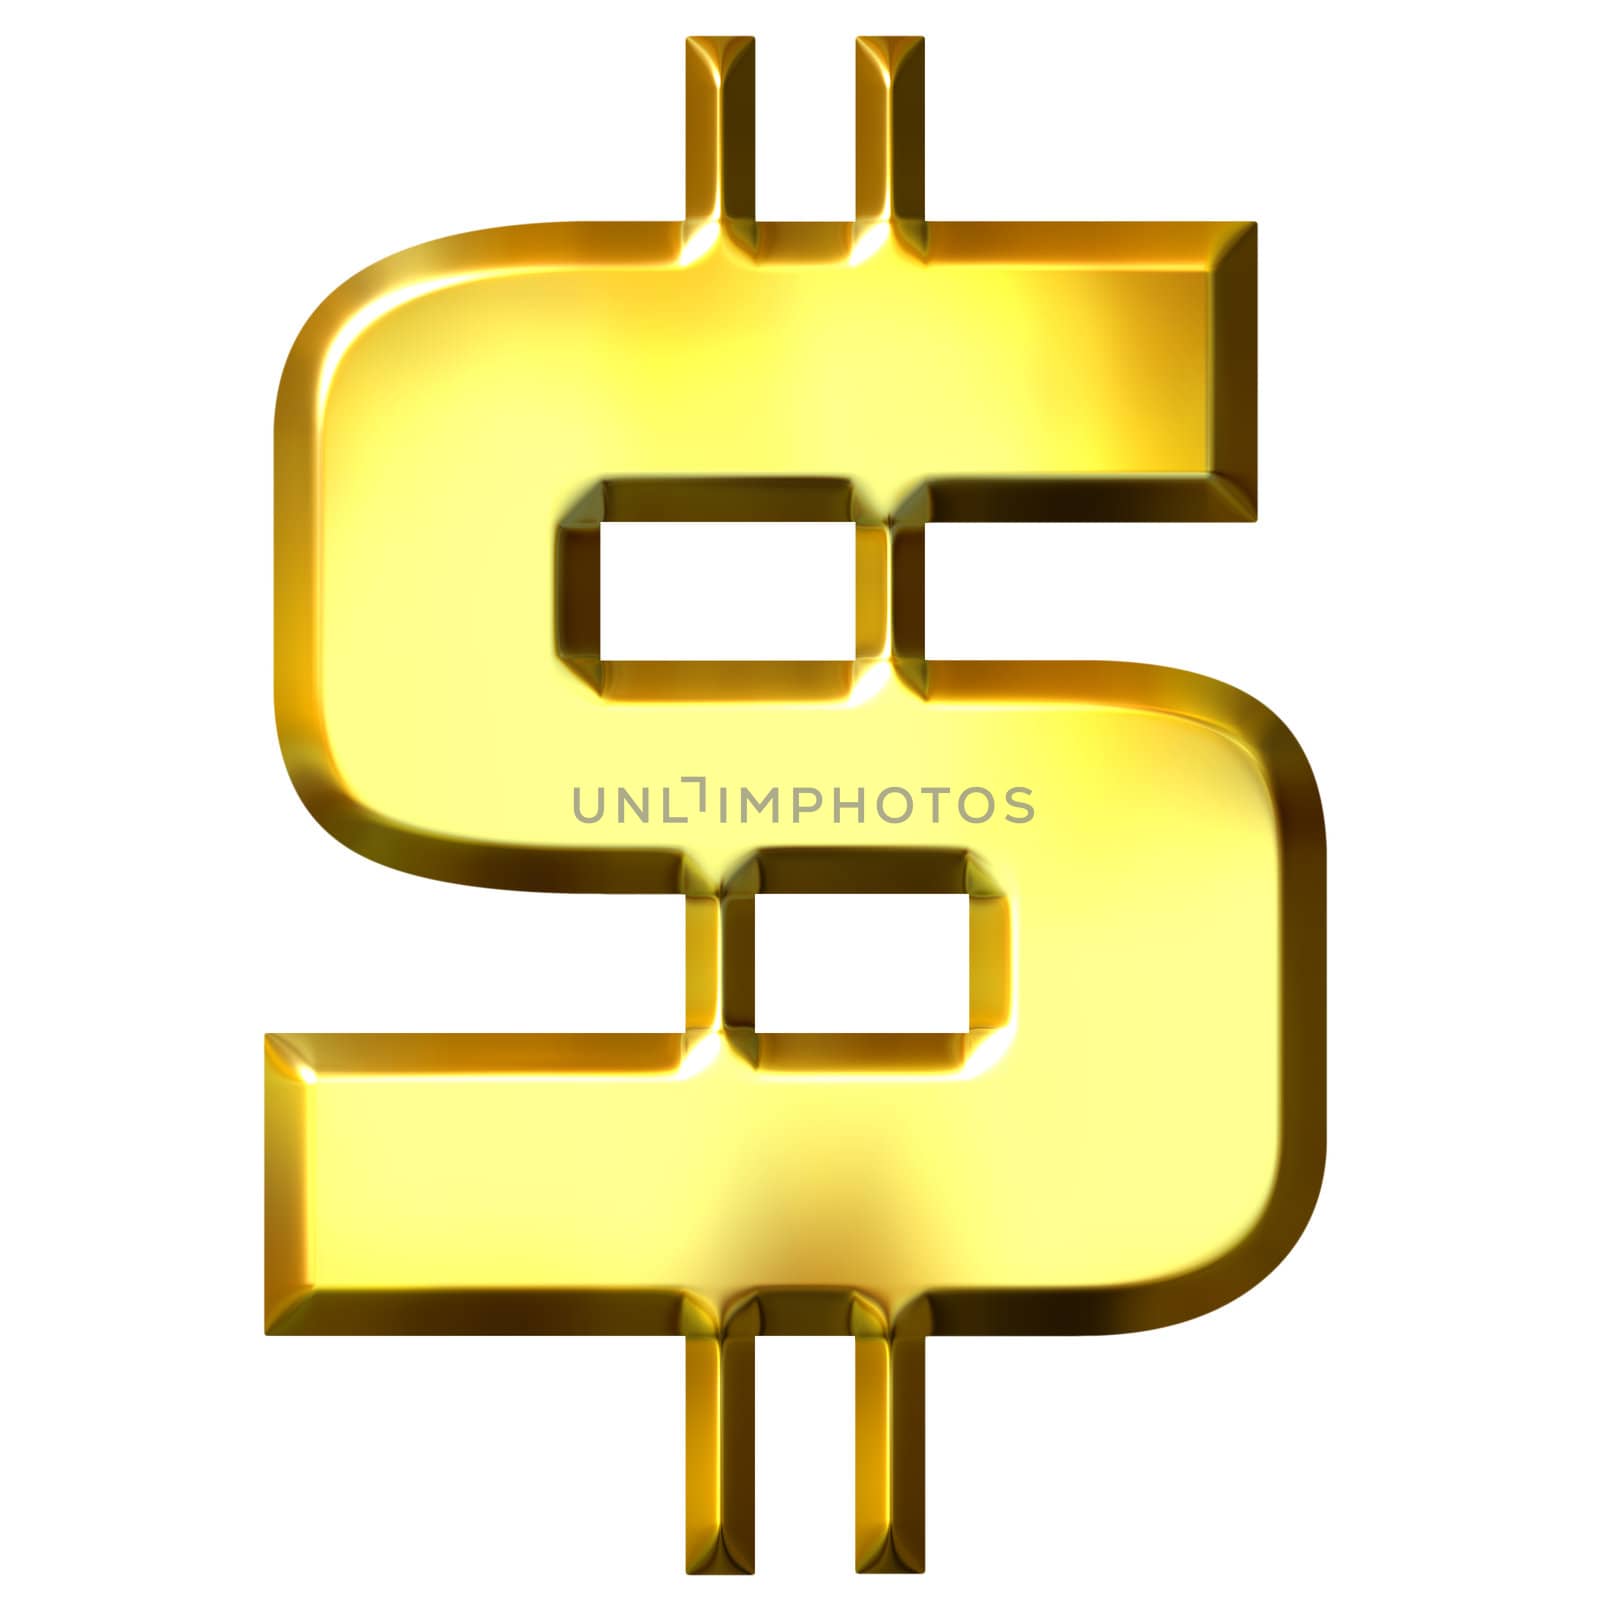 3D Golden Dollar Symbol by Georgios